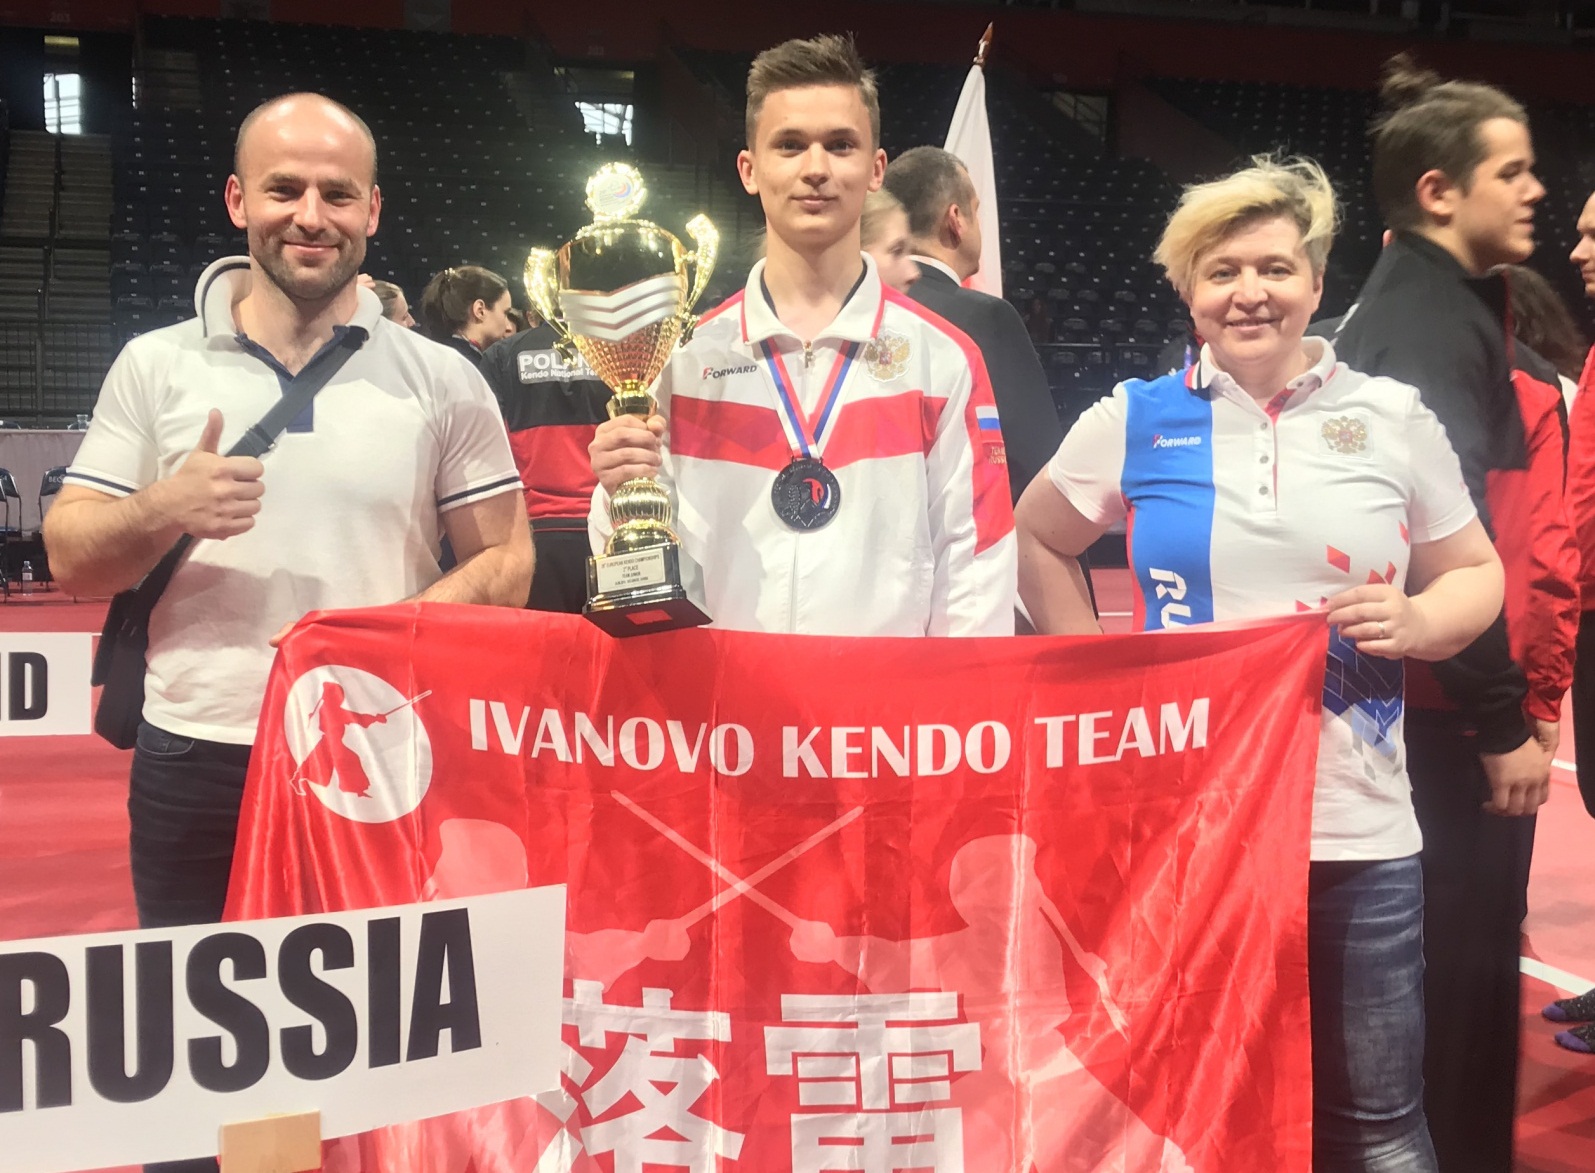  Ивановец стал серебряным призером Первенства Европы по кендо